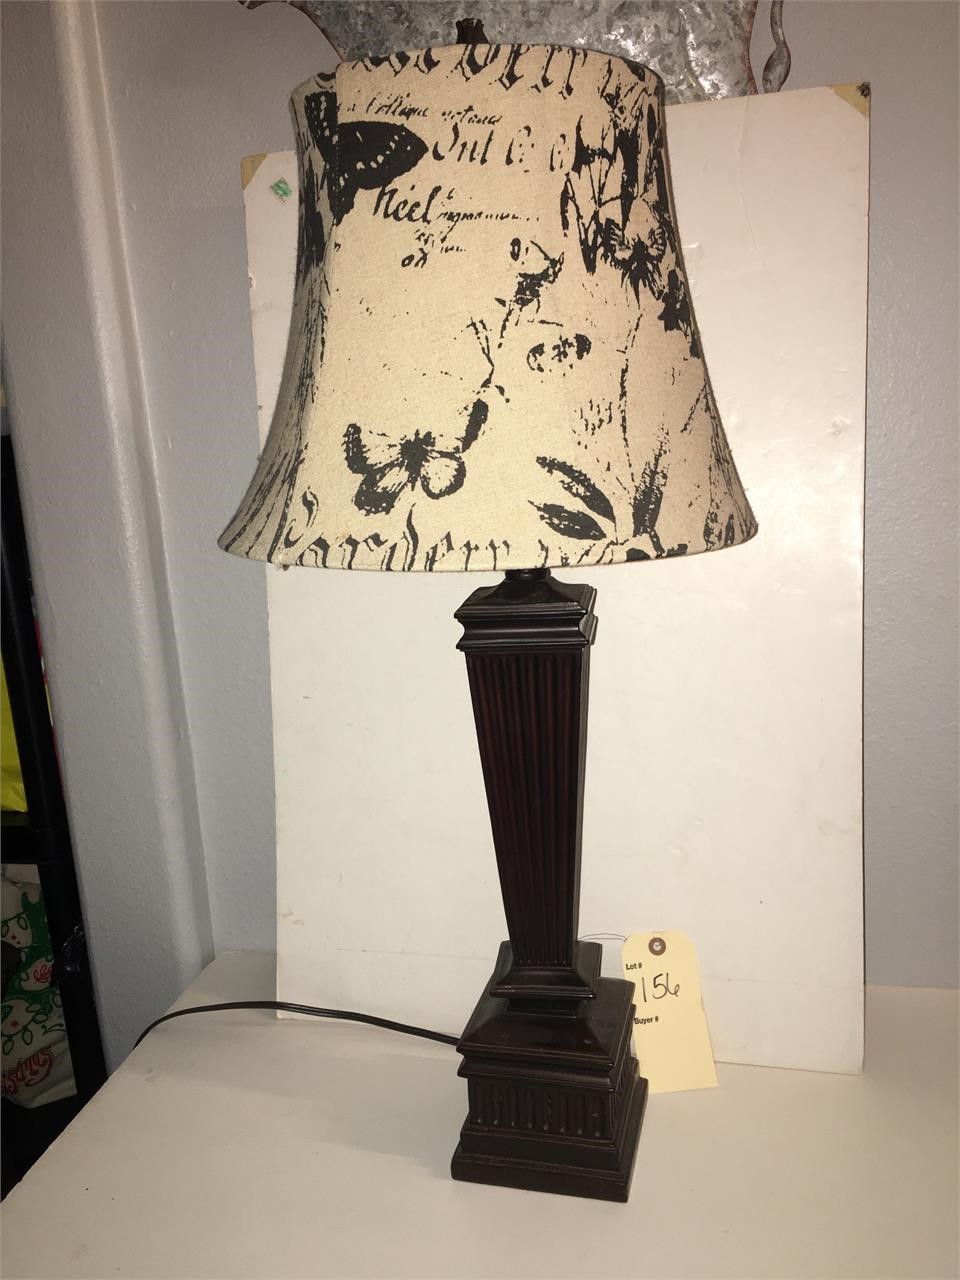 VERY NICE TABLE LAMP